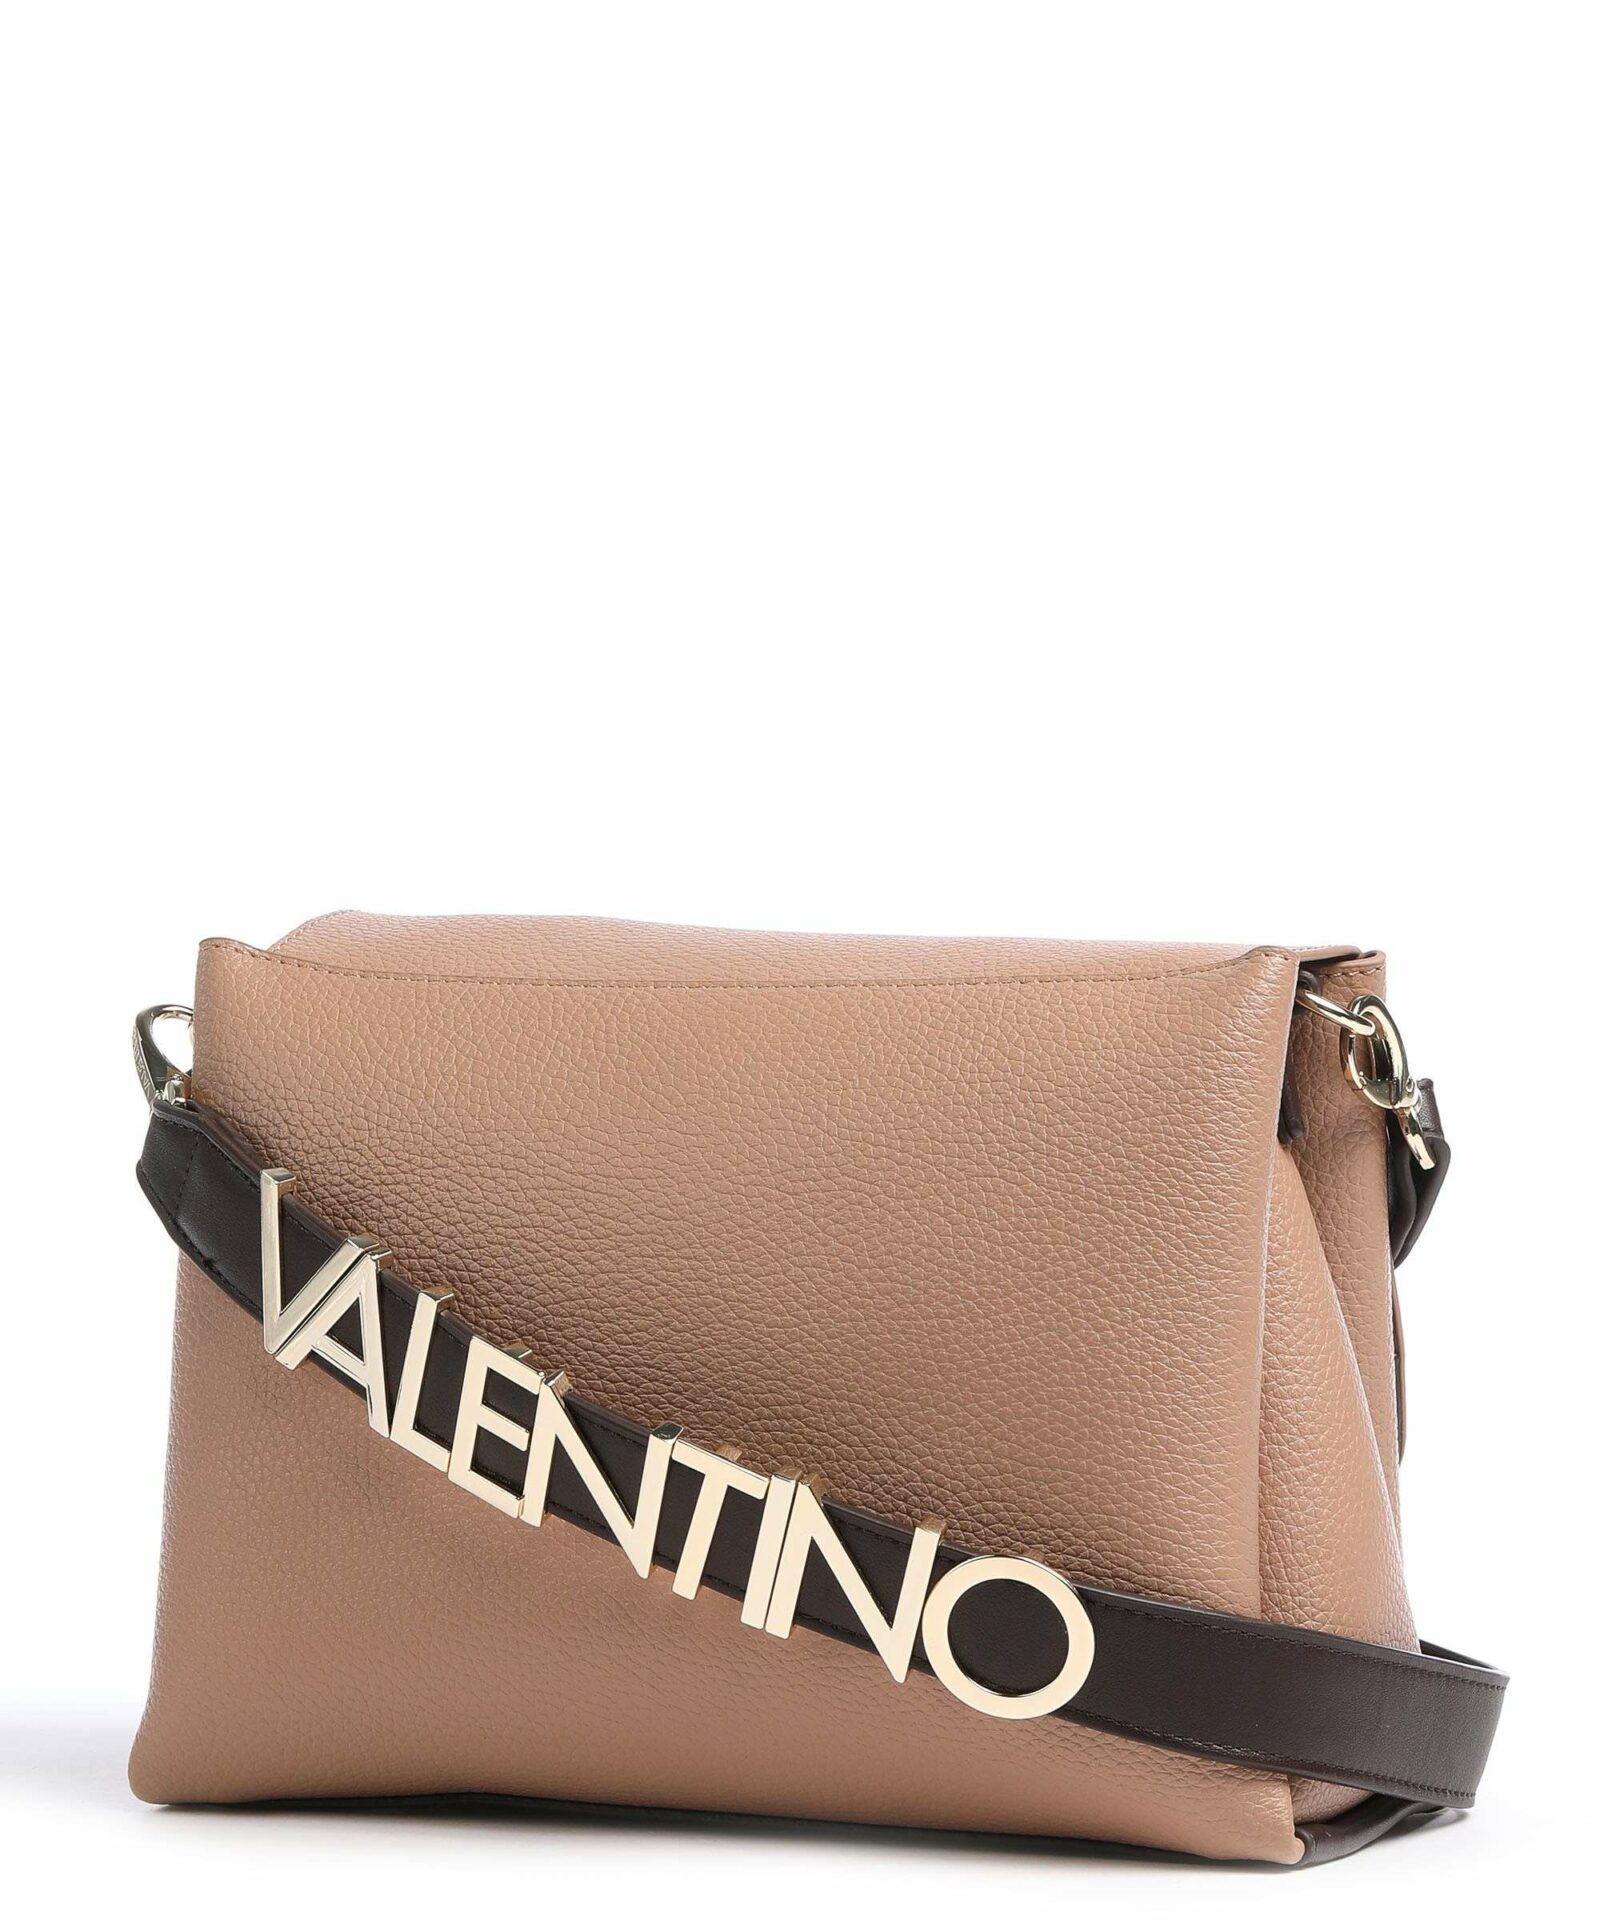 valentino alexia crossbody bag